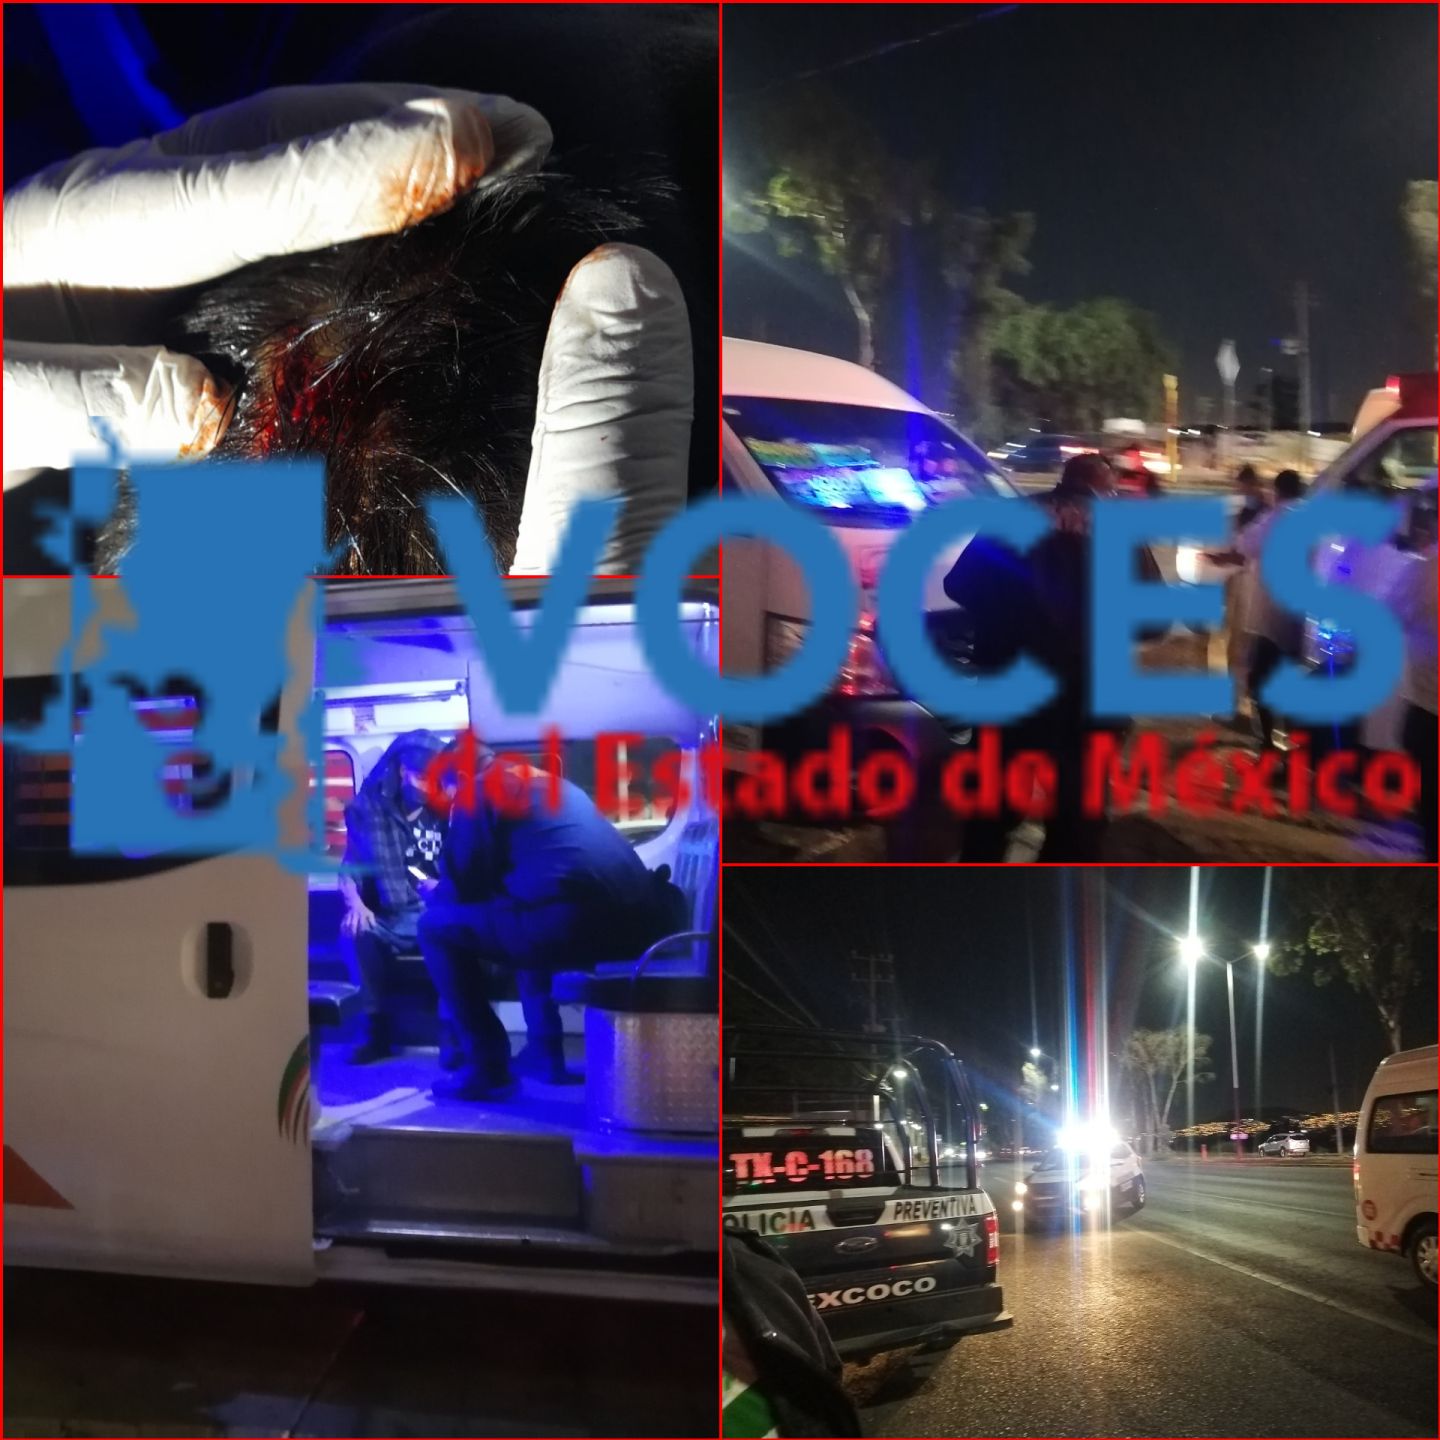 Ratas asaltan transporte público a la altura de puerta Texcoco, carretera Los Reyes la Paz - Texcoco